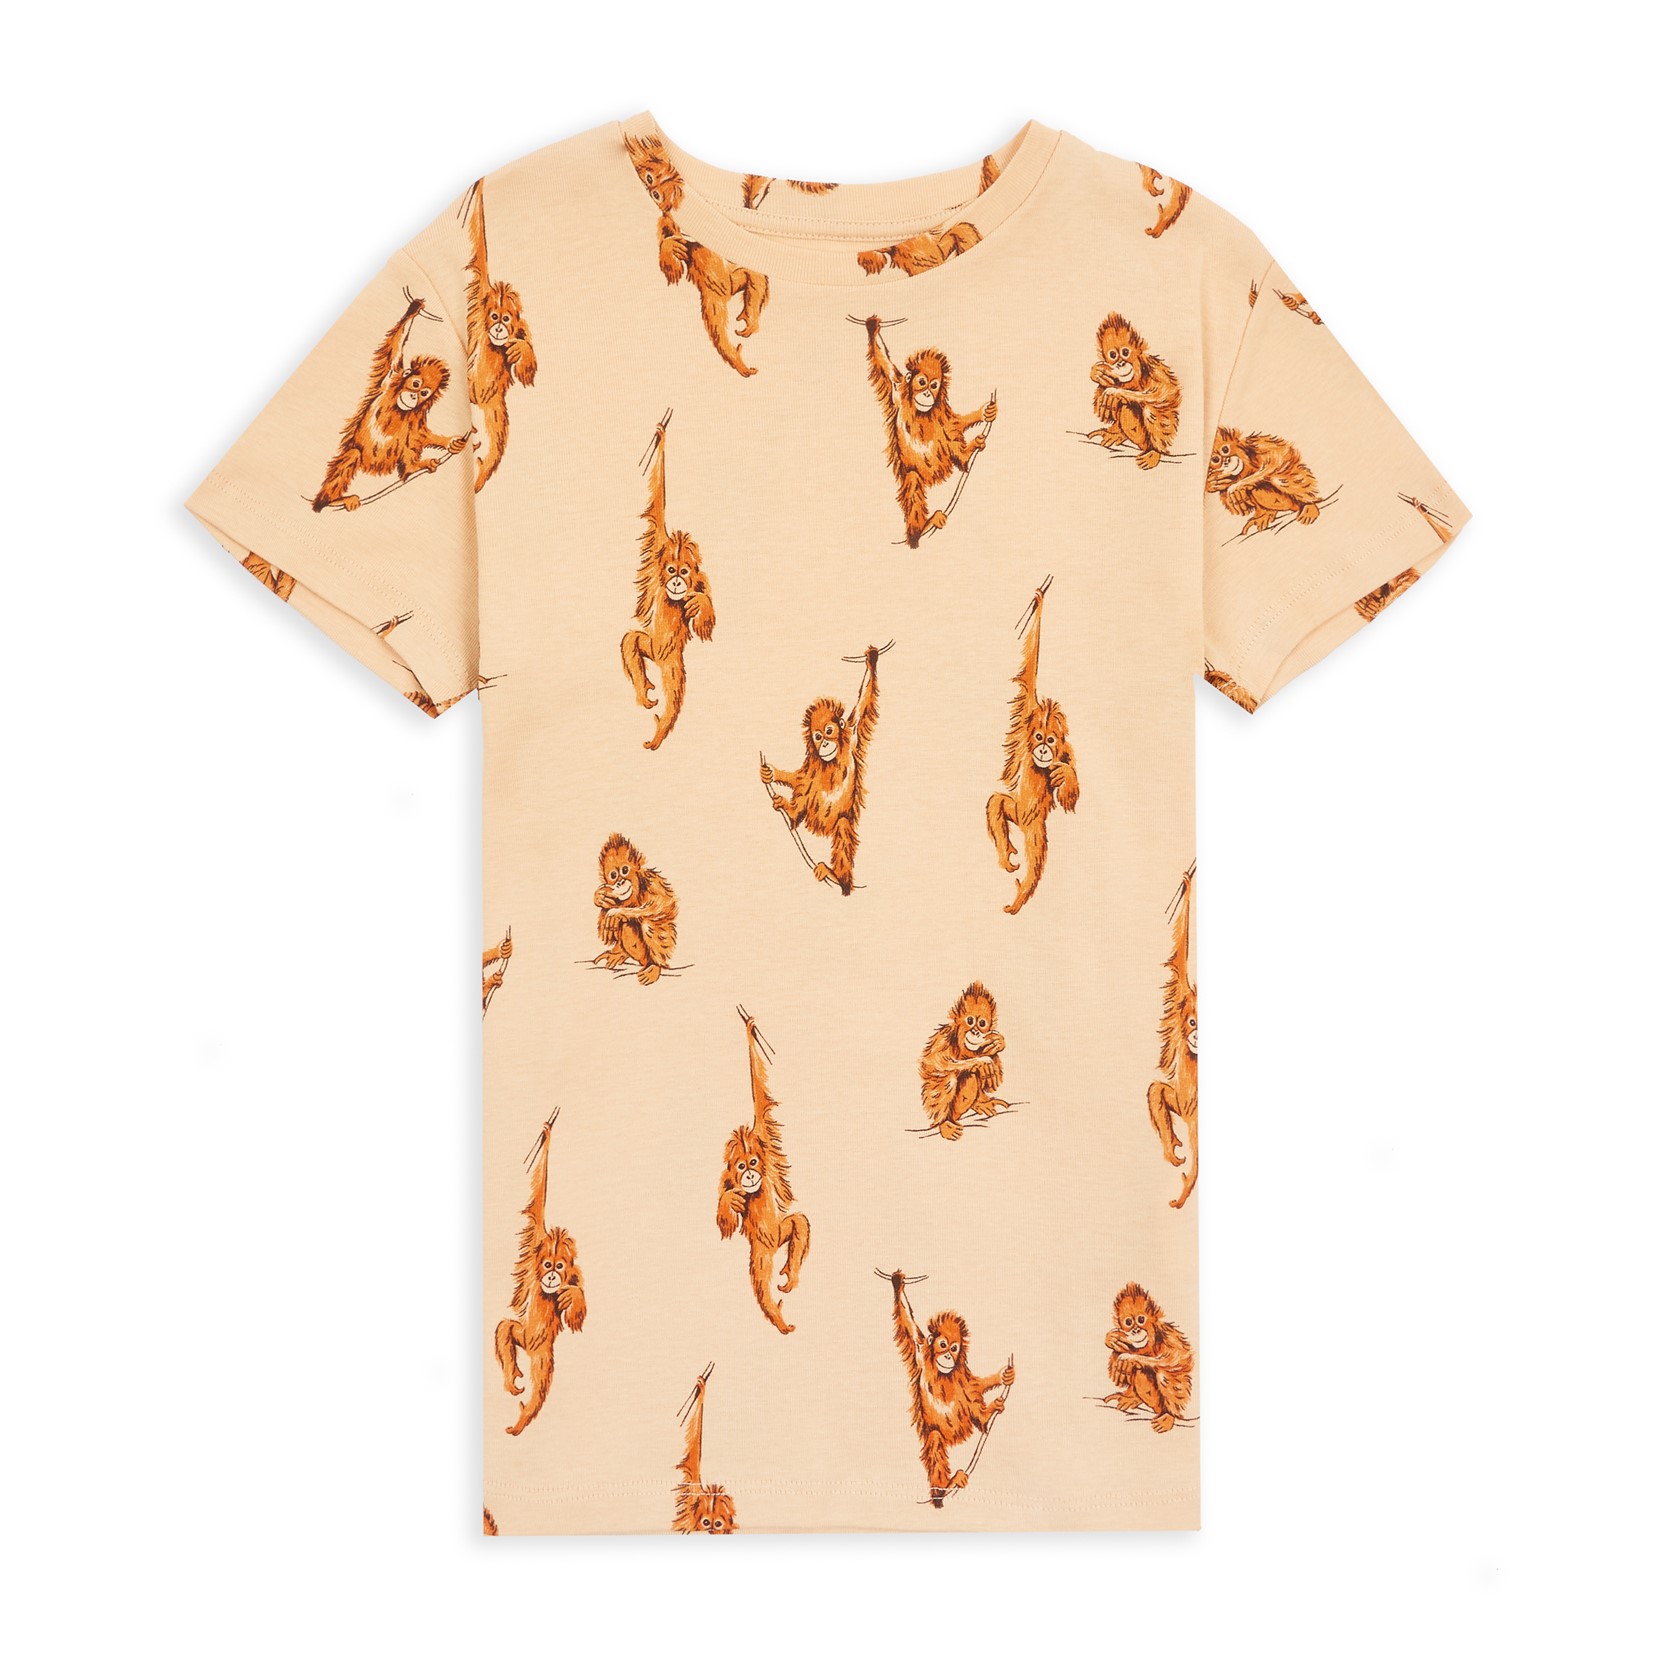 MAI Orangutan T-Shirt